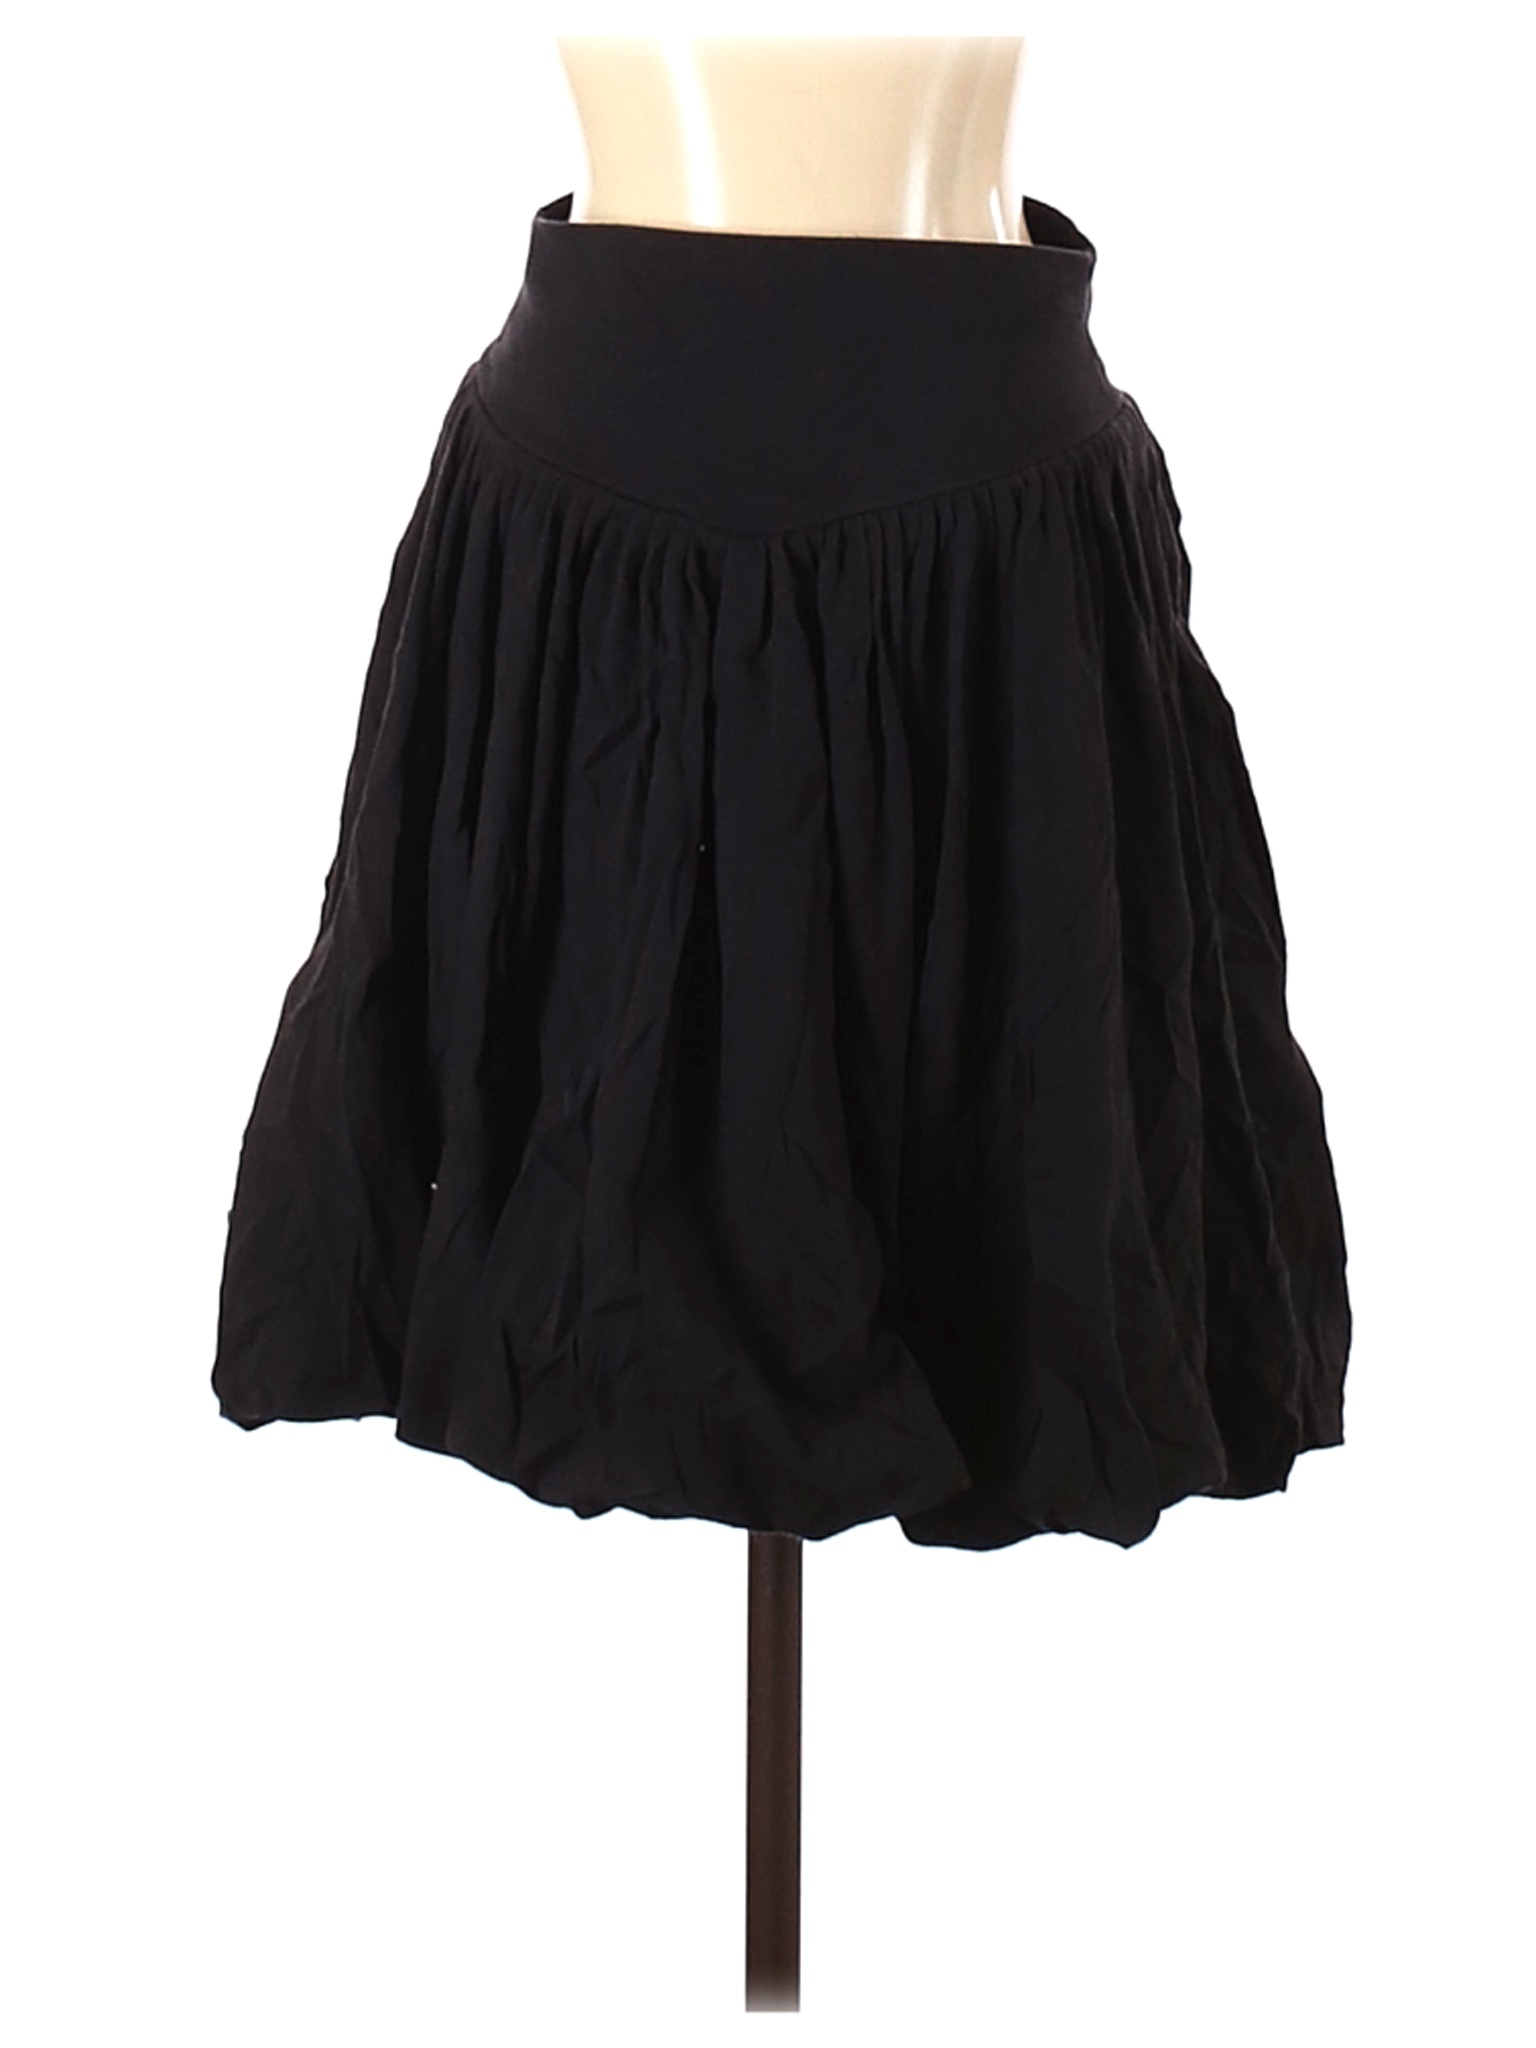 CALVIN KLEIN JEANS Women Black Casual Skirt S | eBay